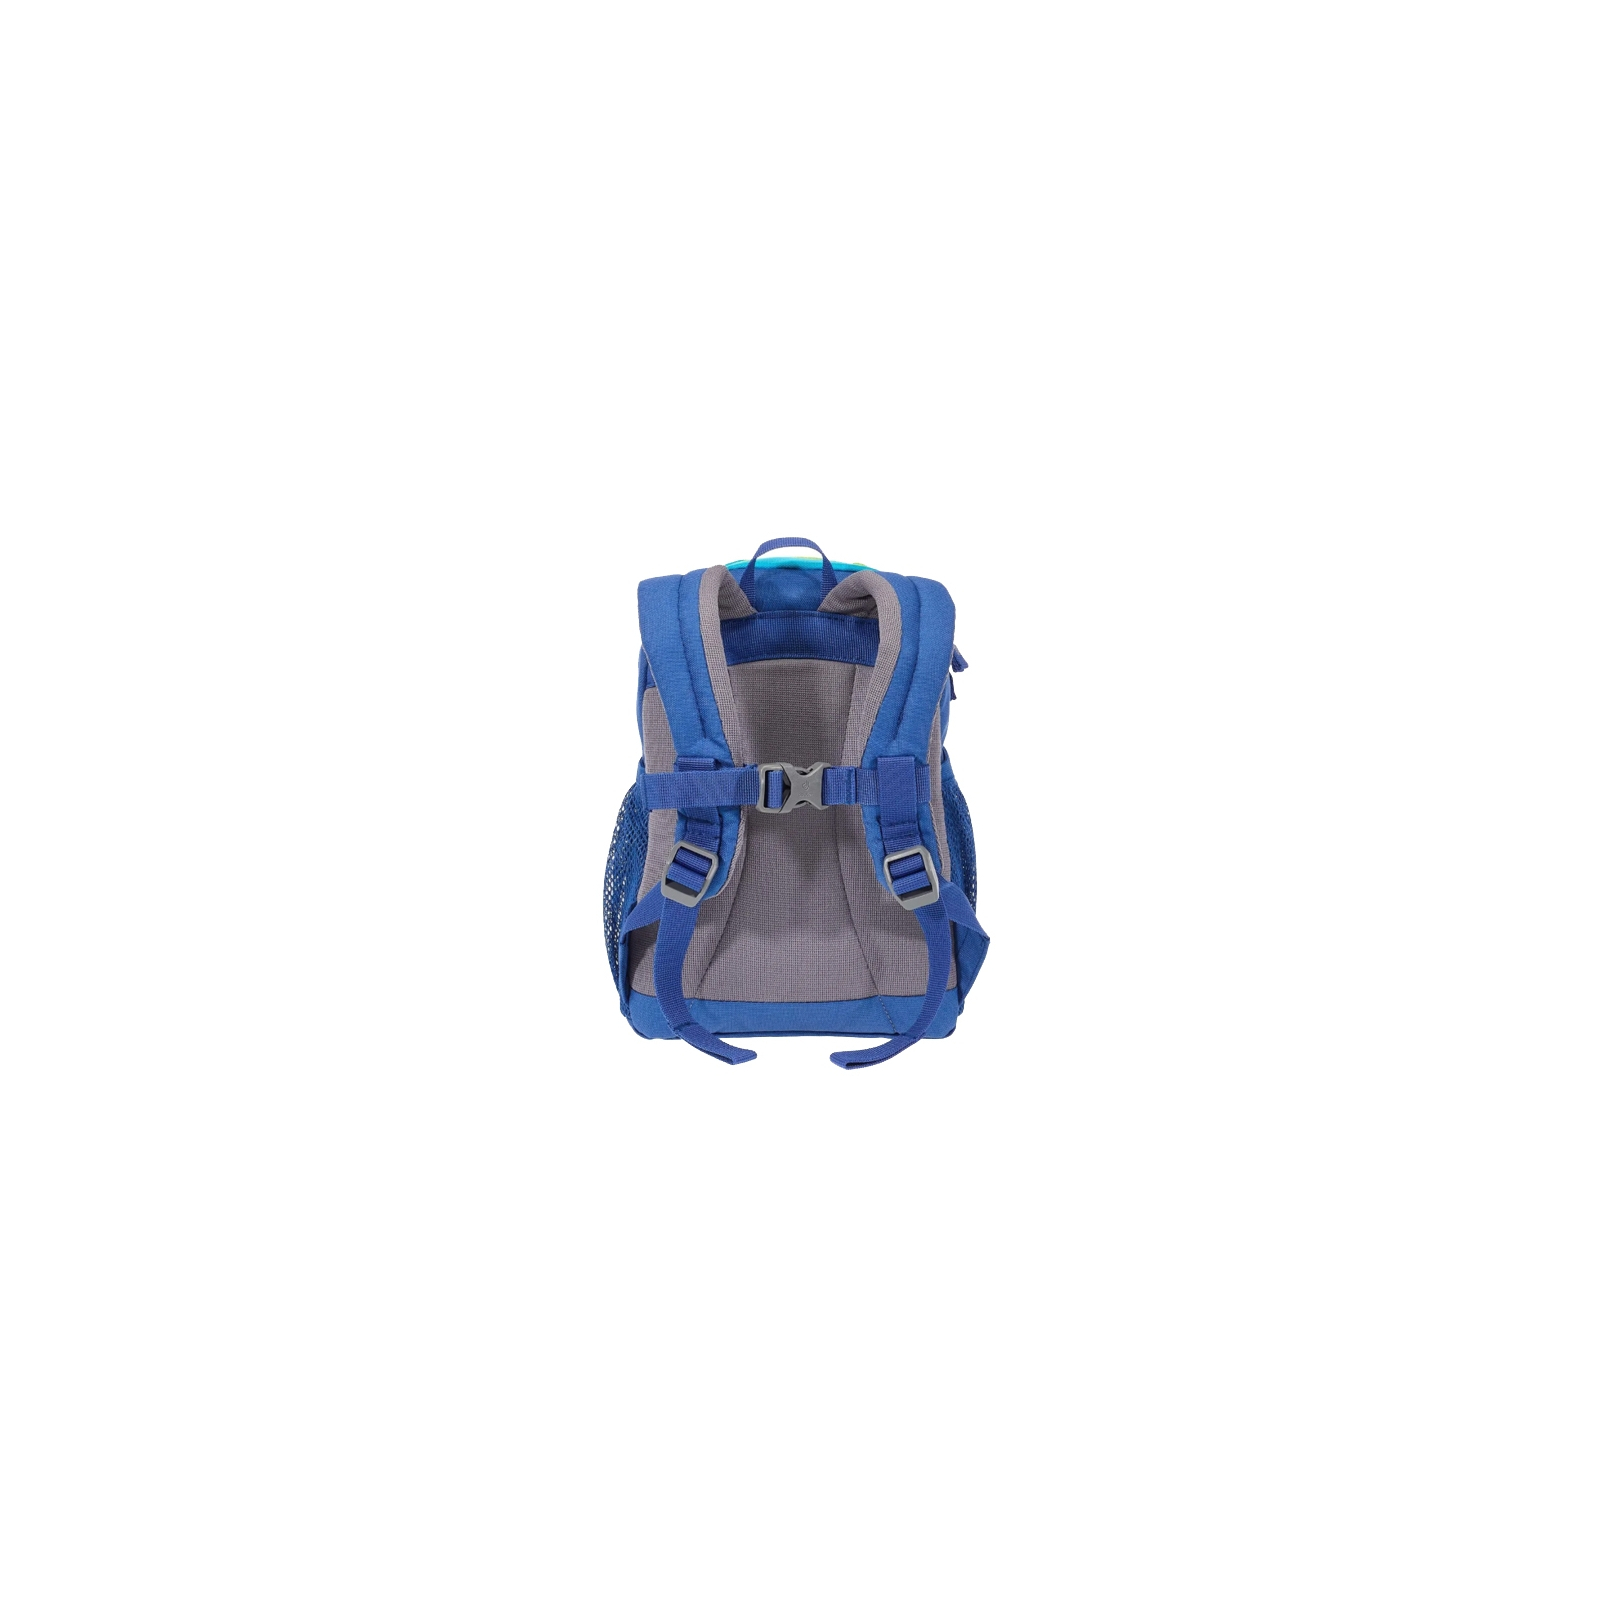 Рюкзак школьный Deuter Pico 3391 indigo-turquoise (36043 3391) изображение 4